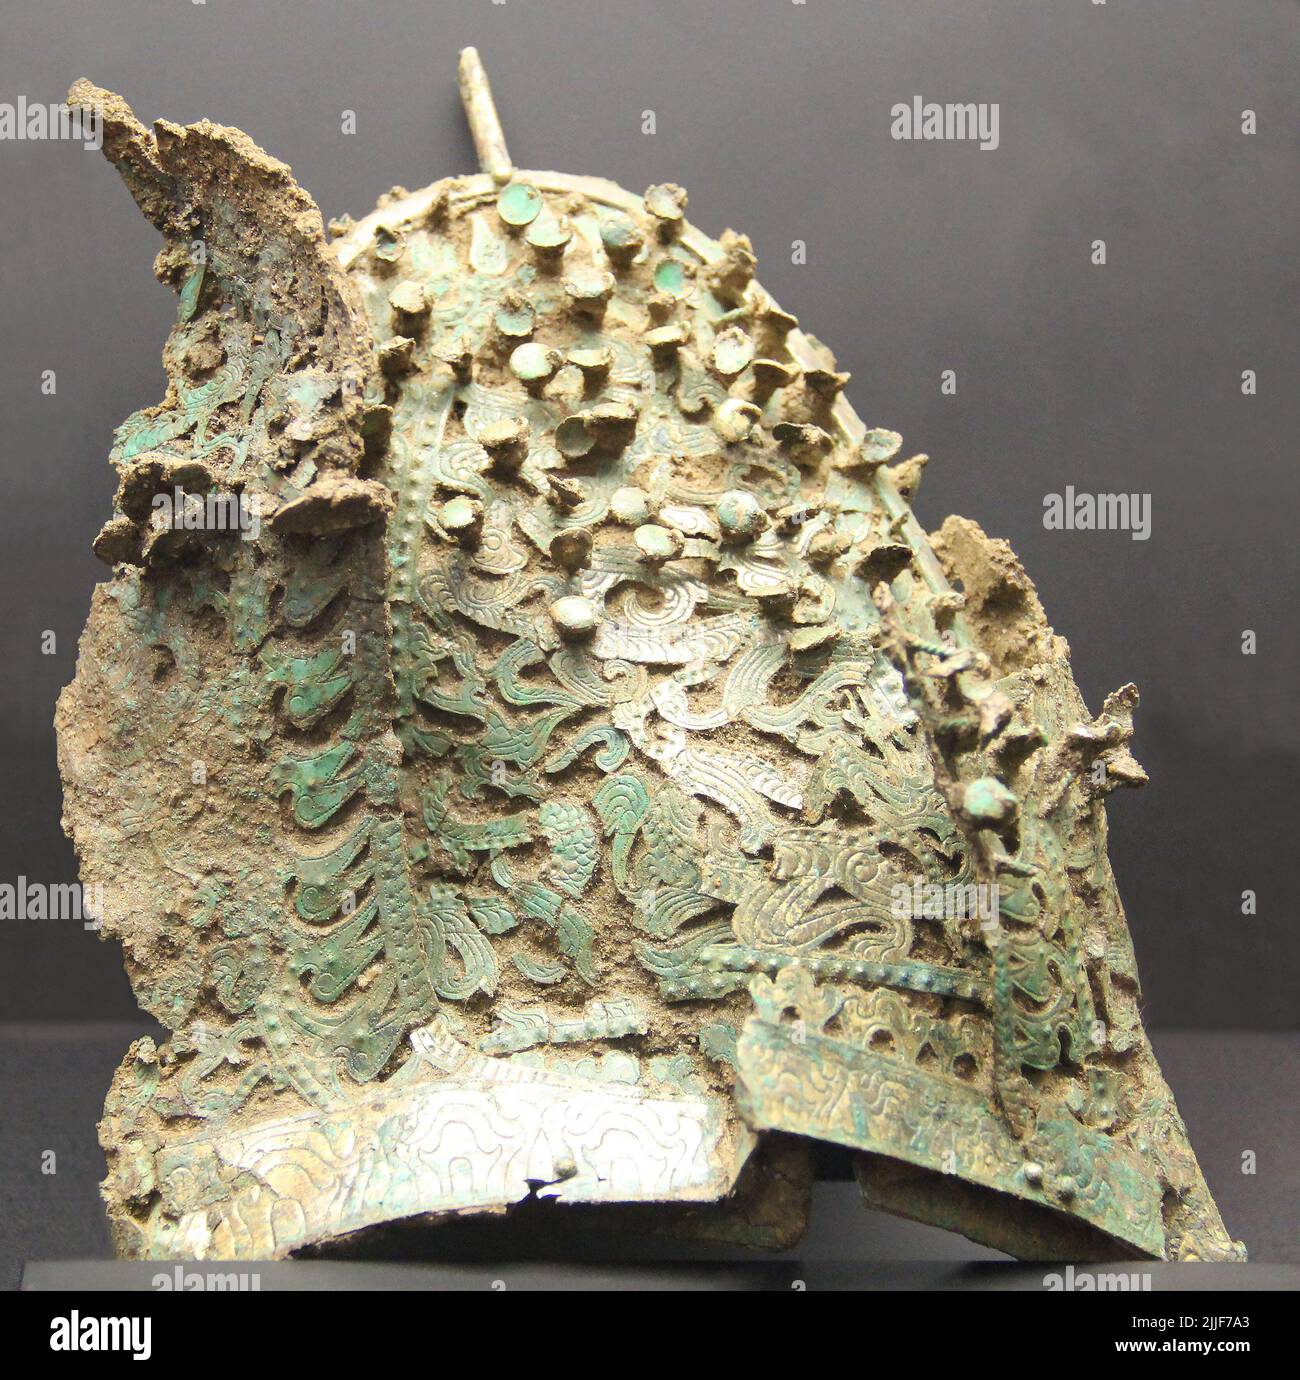 Corée du Sud : calotte de bronze doré, Royaume de Baekje, période de trois royaumes (18 BCE - 668 ce), Musée national de Corée, Séoul. Baekje/Paekche était l'un des trois royaumes de Corée, aux côtés de Goguryeo et Silla. Situé dans le sud-ouest de la Corée, le royaume a été fouillé par Onjo, troisième fils du légendaire fondateur de Goguryeo, Jumong, à Wiryeseong (sud de Séoul moderne). Baekje a souvent combattu et allié avec les autres royaumes, et était à son apogée au 4th siècle, quand il a contrôlé la plupart de la péninsule occidentale et peut-être même des territoires en Chine comme à Liaoxi. C'était une vache de mer importante Banque D'Images